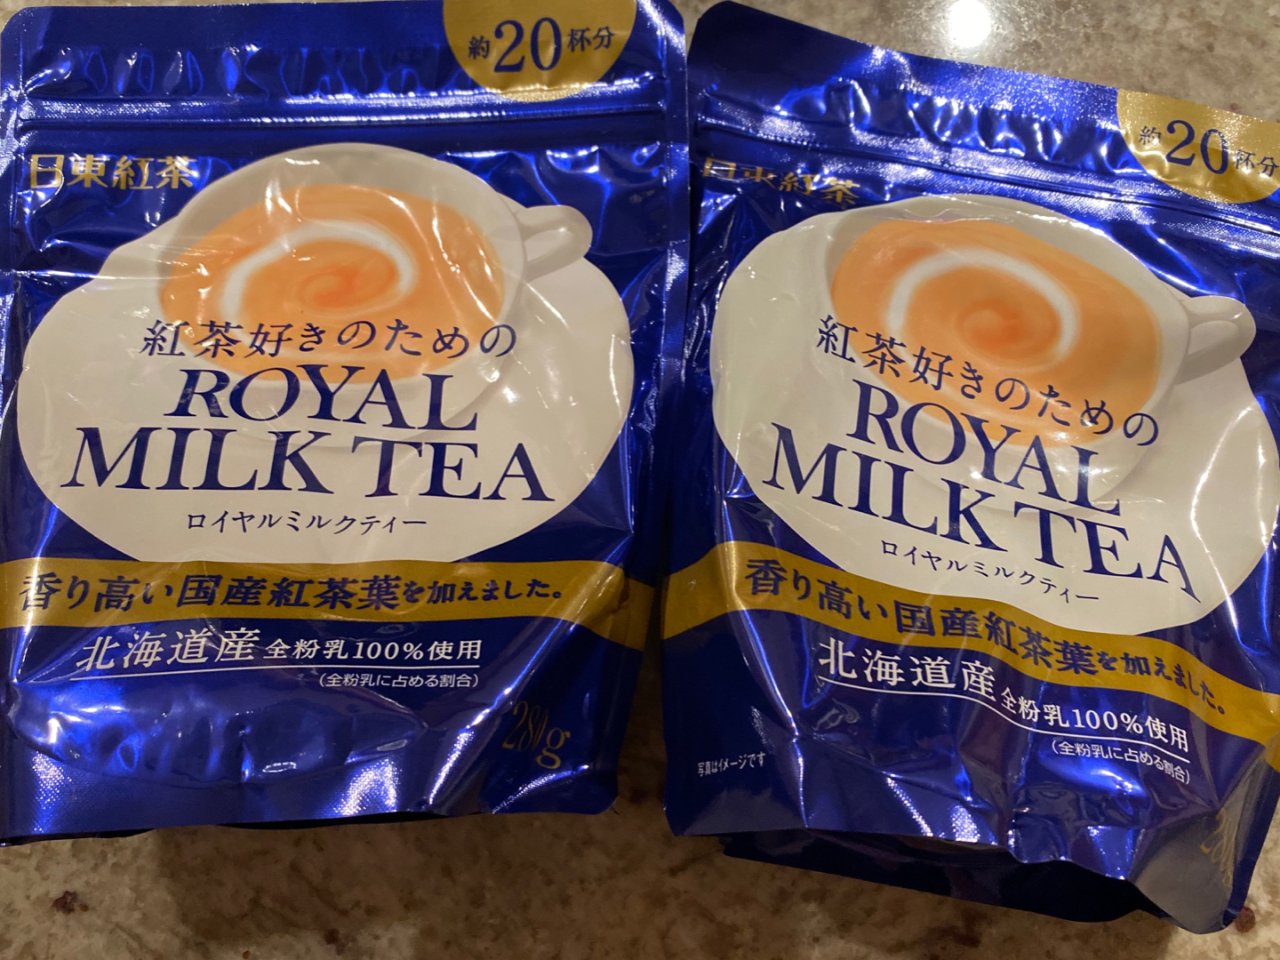 Royal Milk Tea,日东红茶